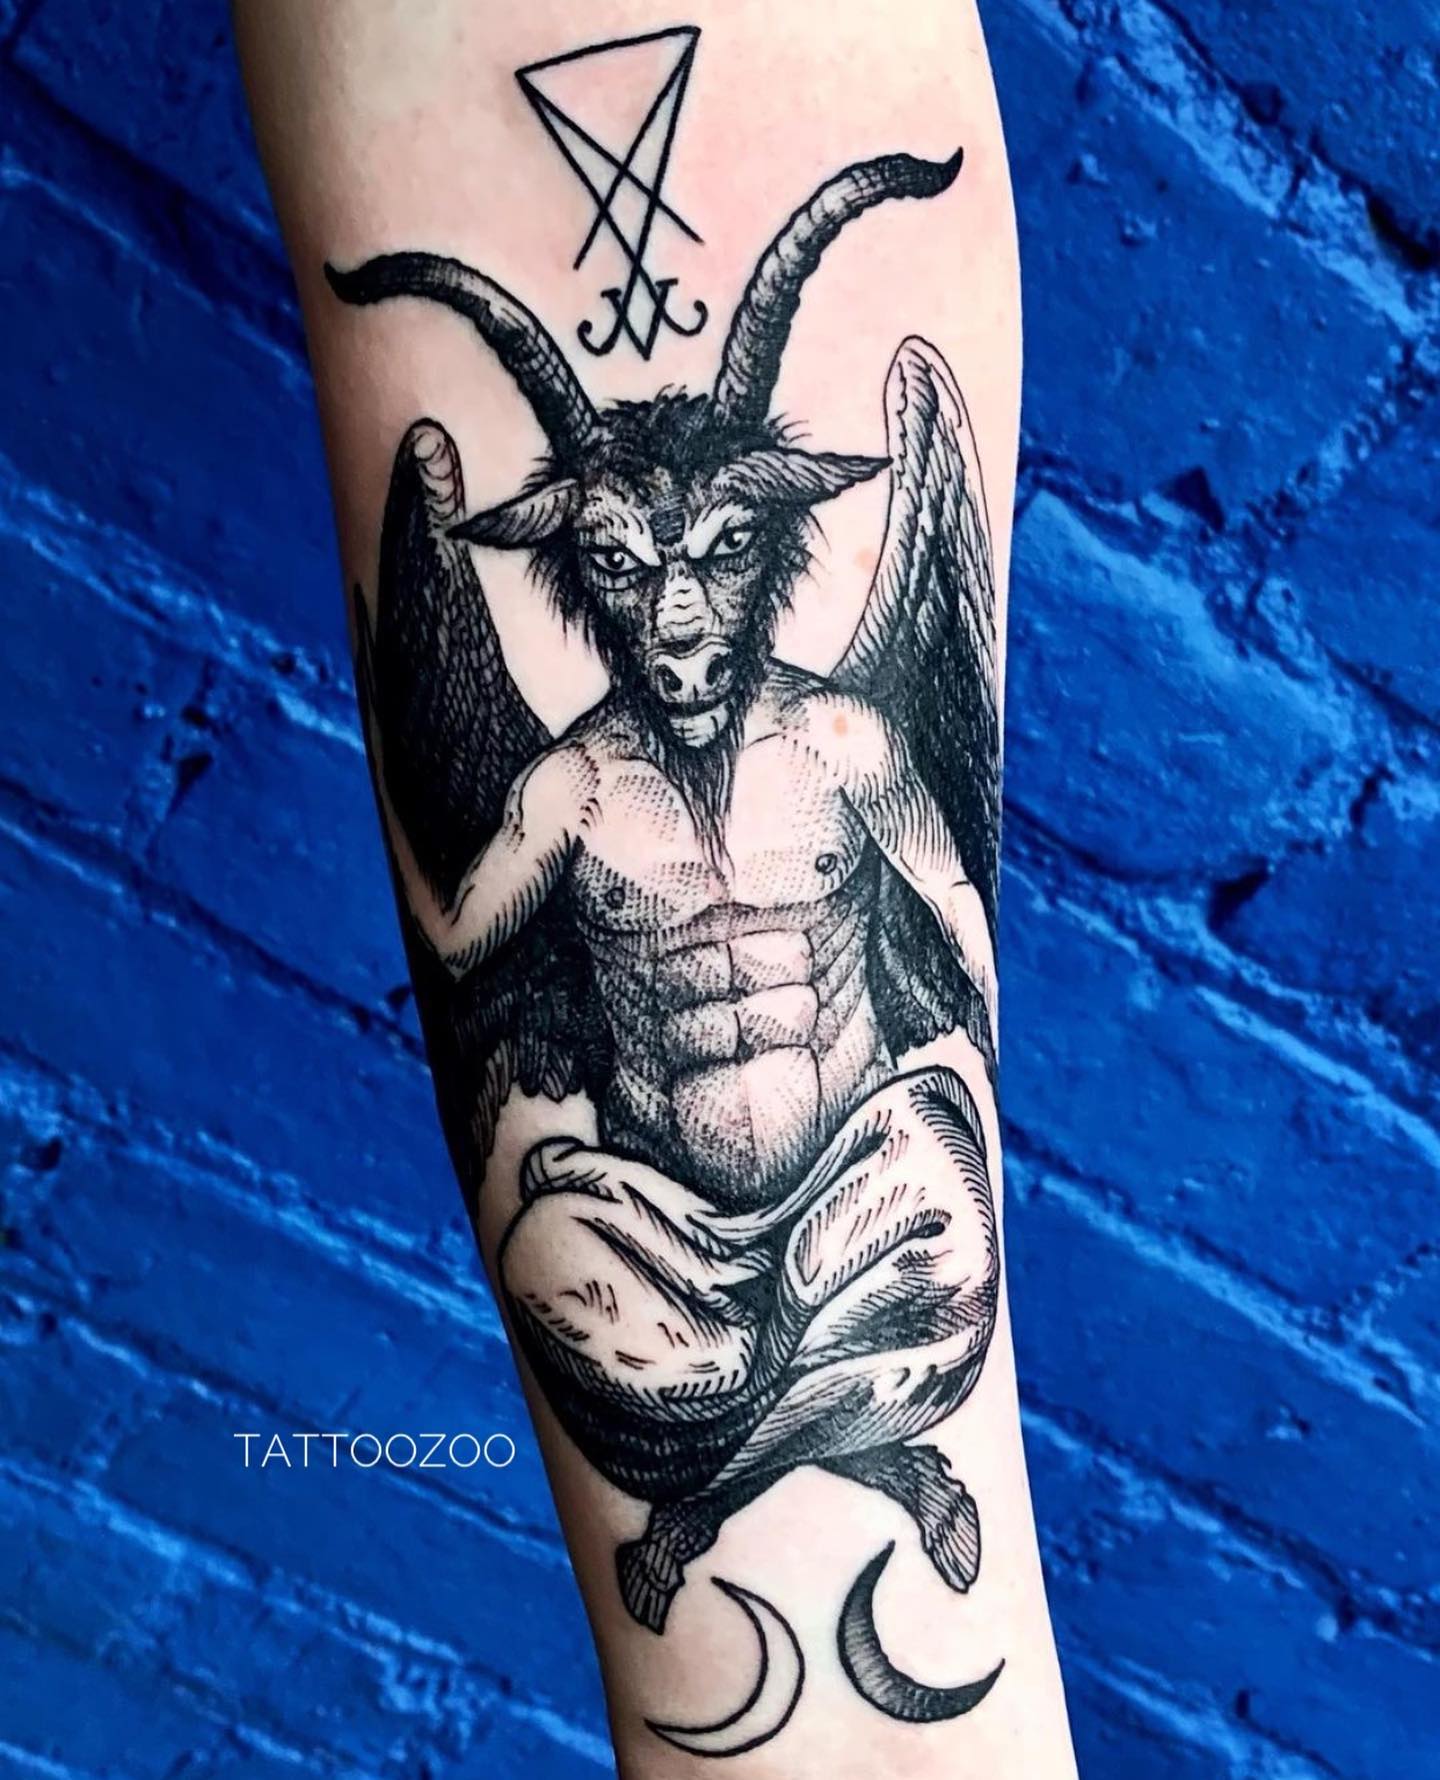 Tattoo by Jason – TATTOO ZOO